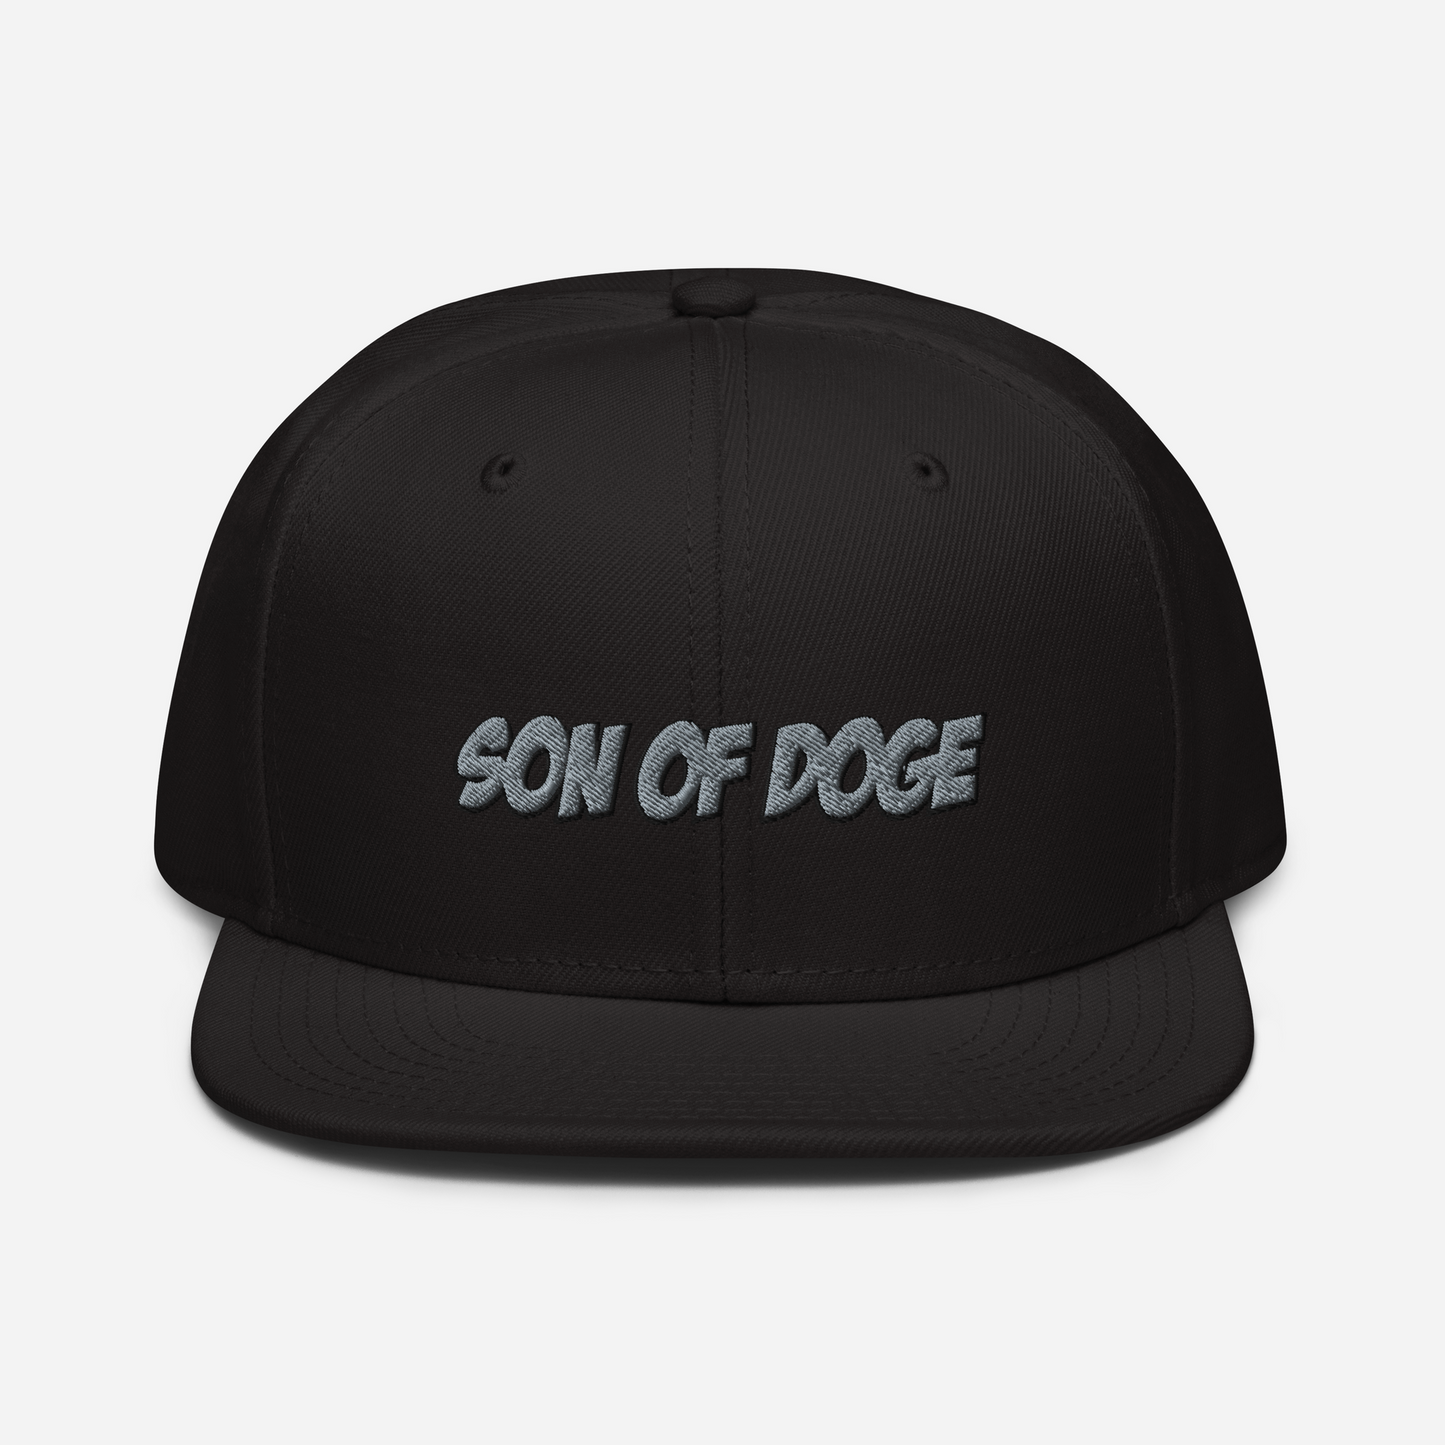 Son Of Doge Snapback Hat